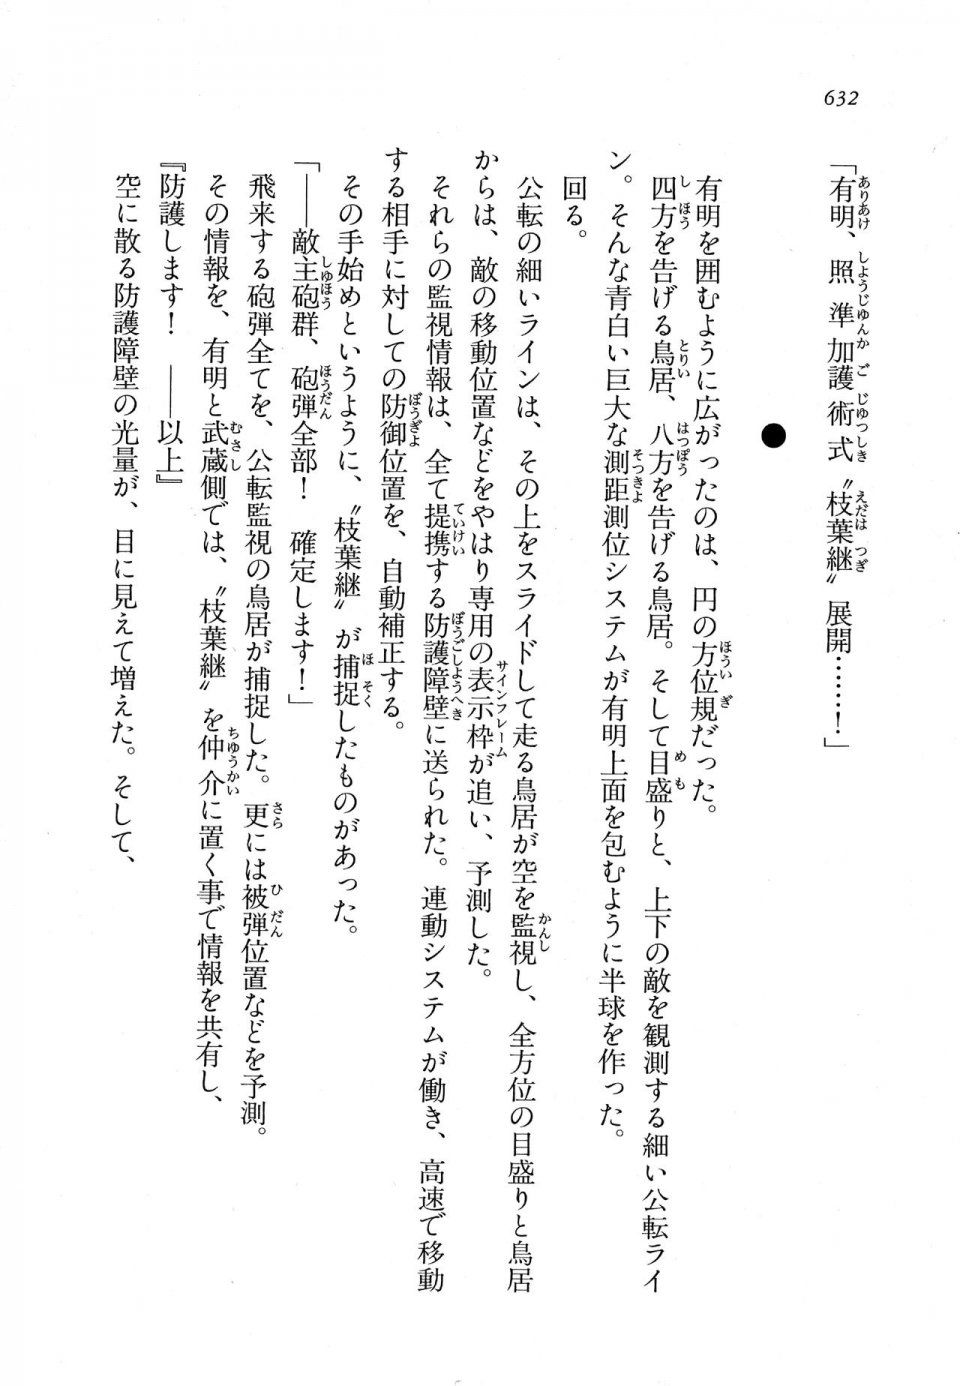 Kyoukai Senjou no Horizon LN Vol 11(5A) - Photo #632